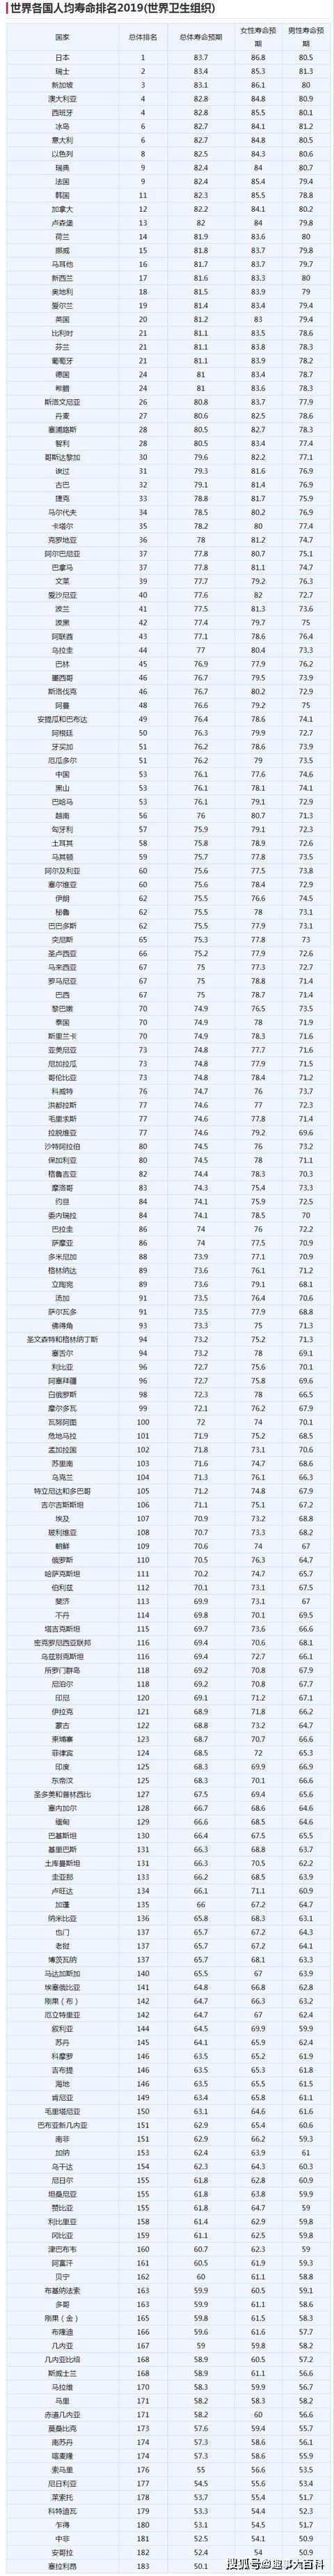 2019世界各国人均寿命排名:日本继续第1,中国排名第53!